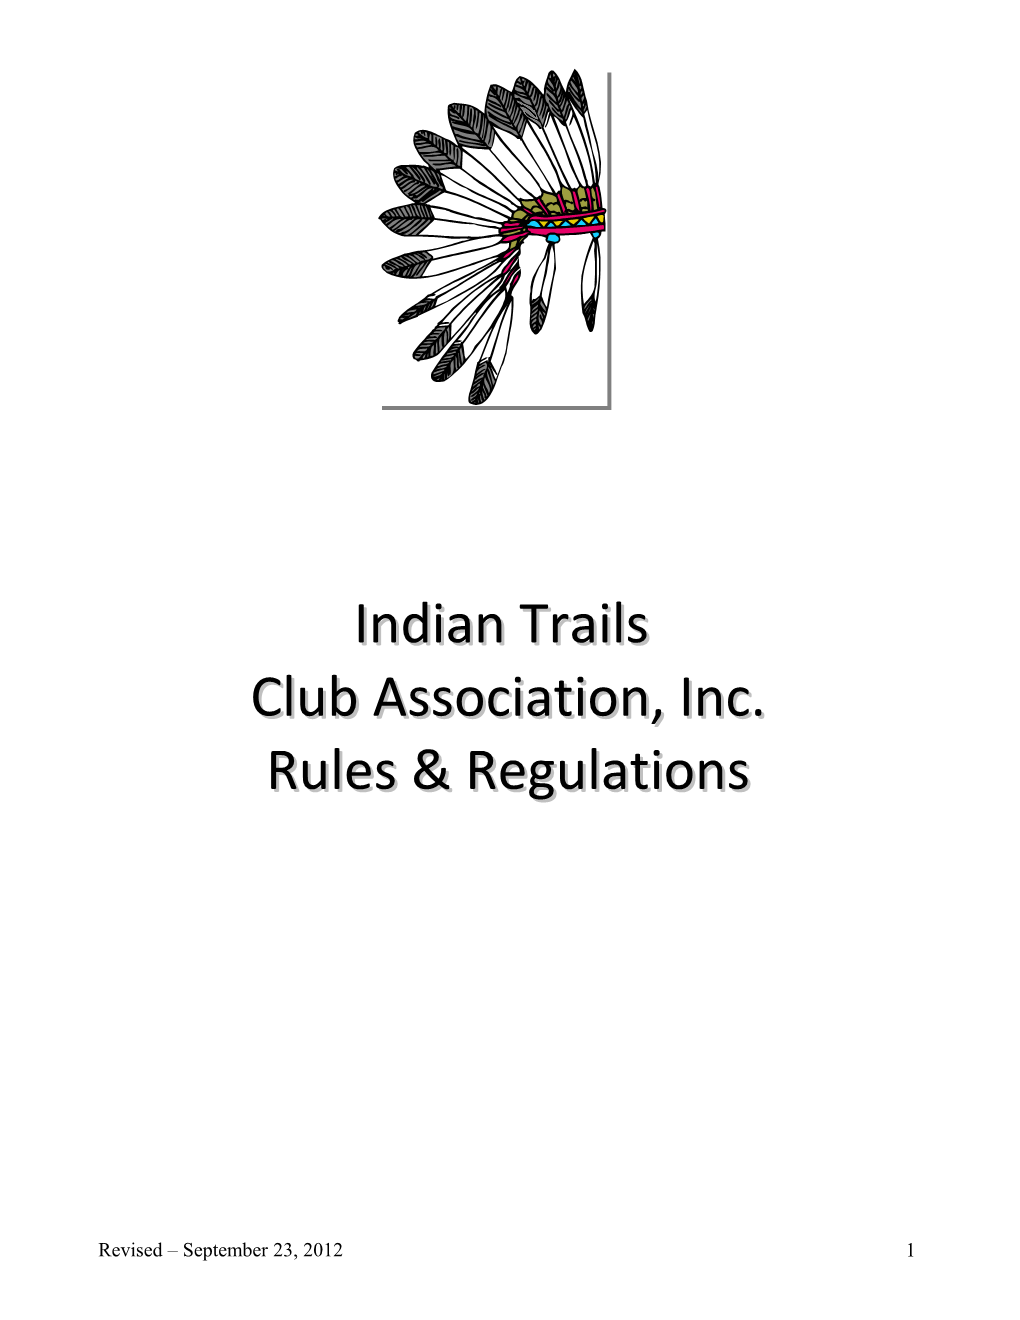 Indian Trails Club Association, Inc